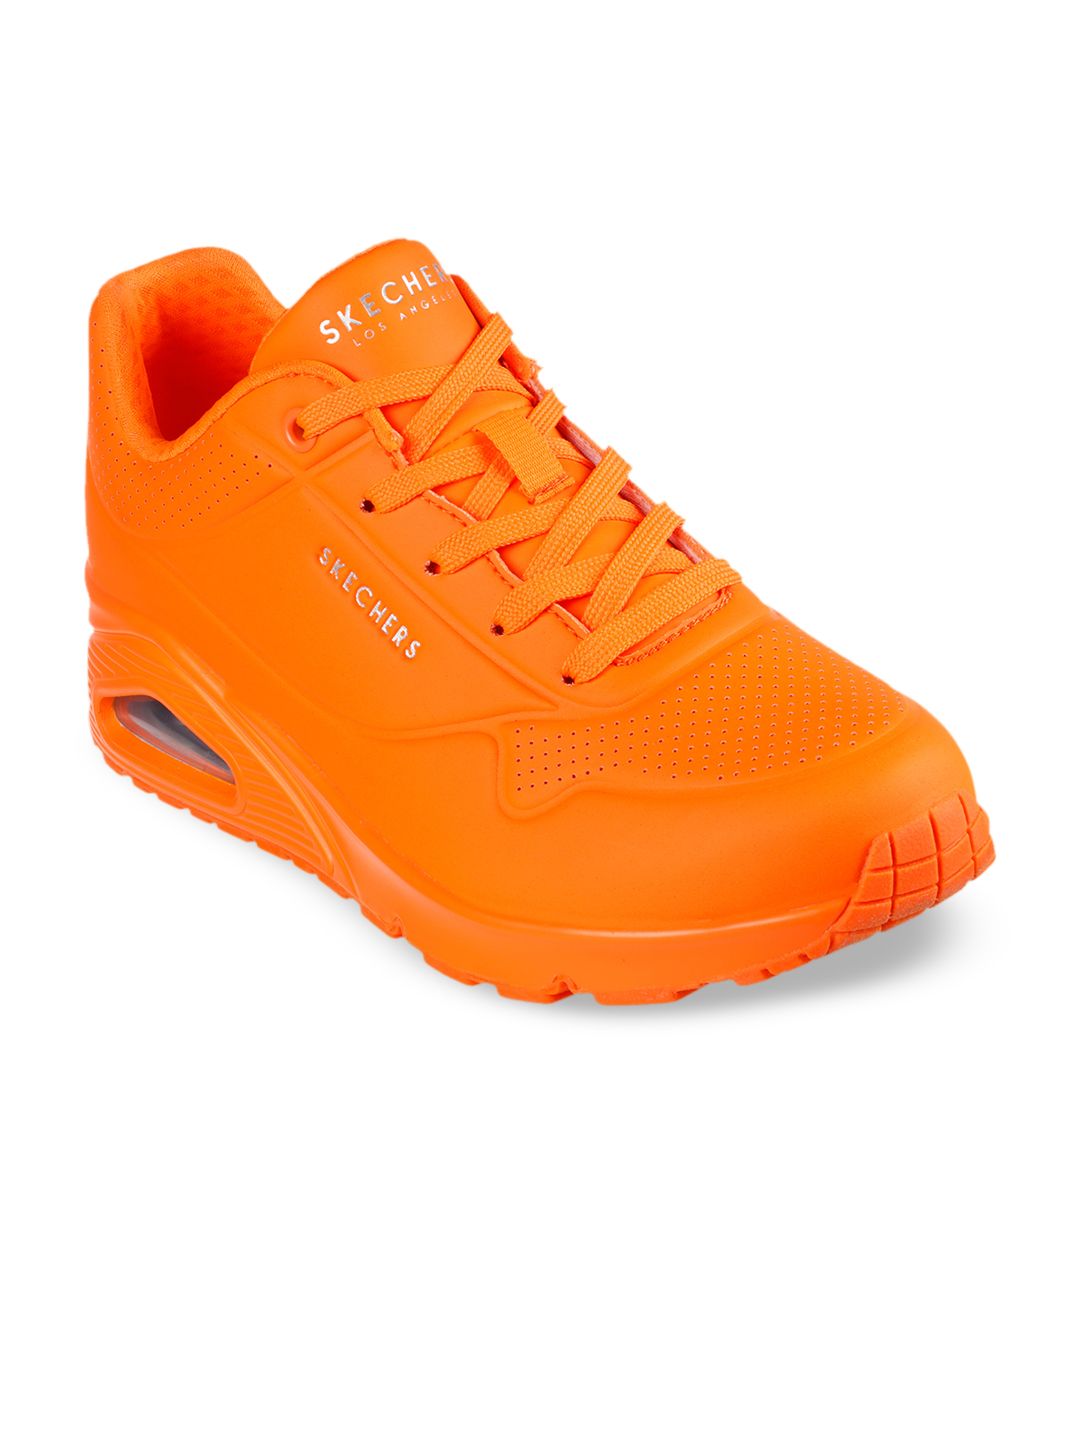 Skechers Women Orange Solid Sneakers Price in India